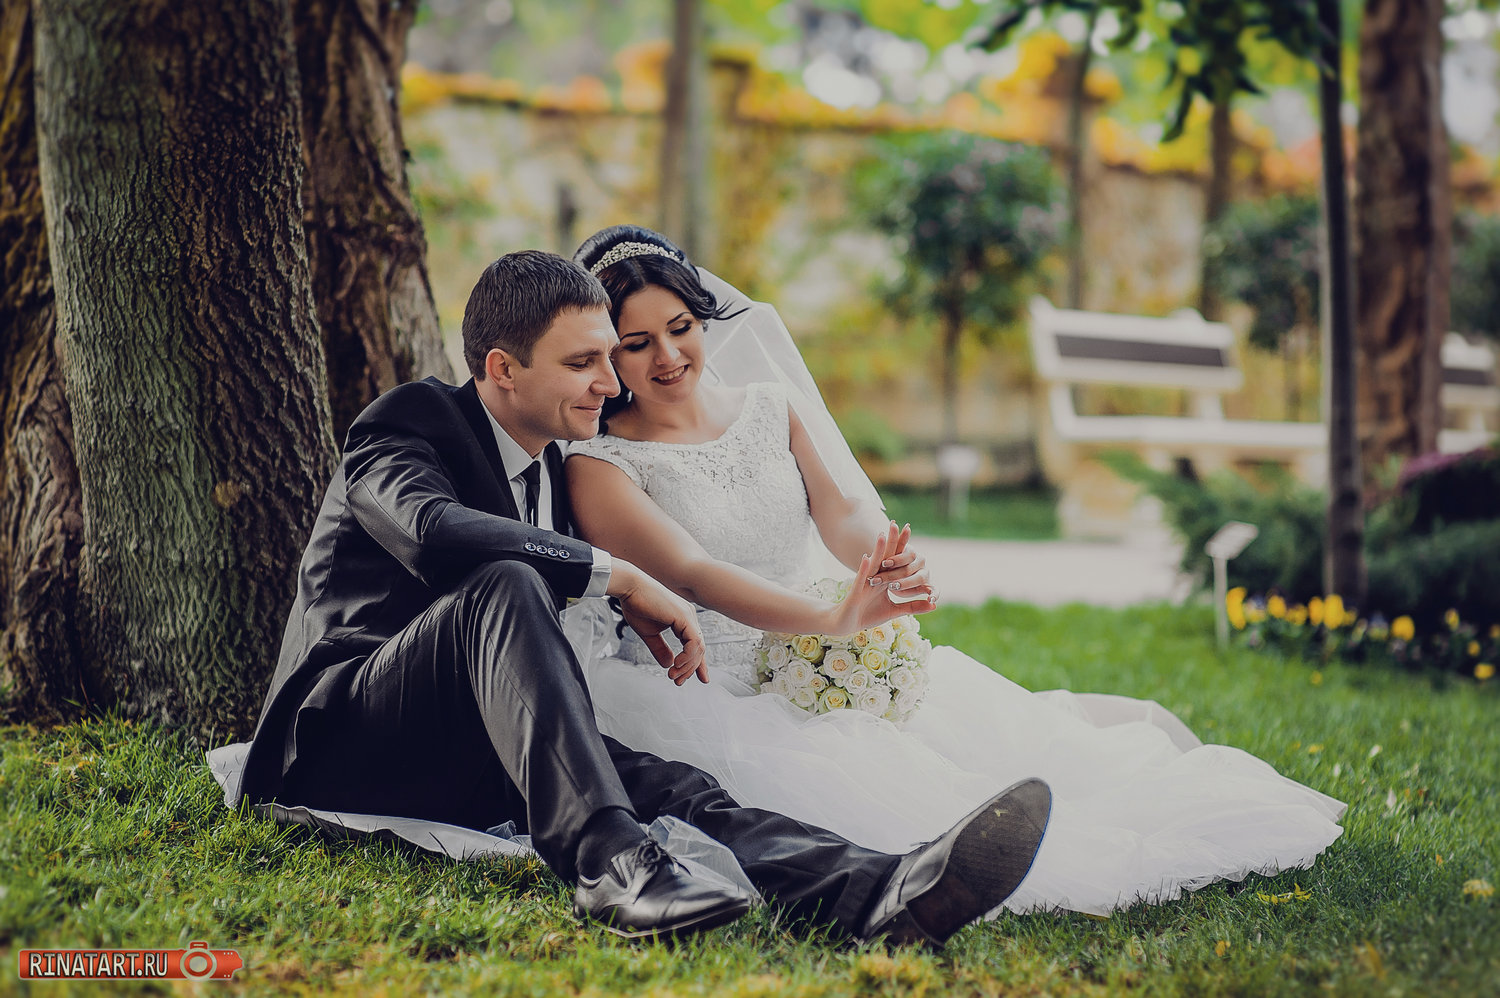 Профессиональный свадебный фотограф Анапы